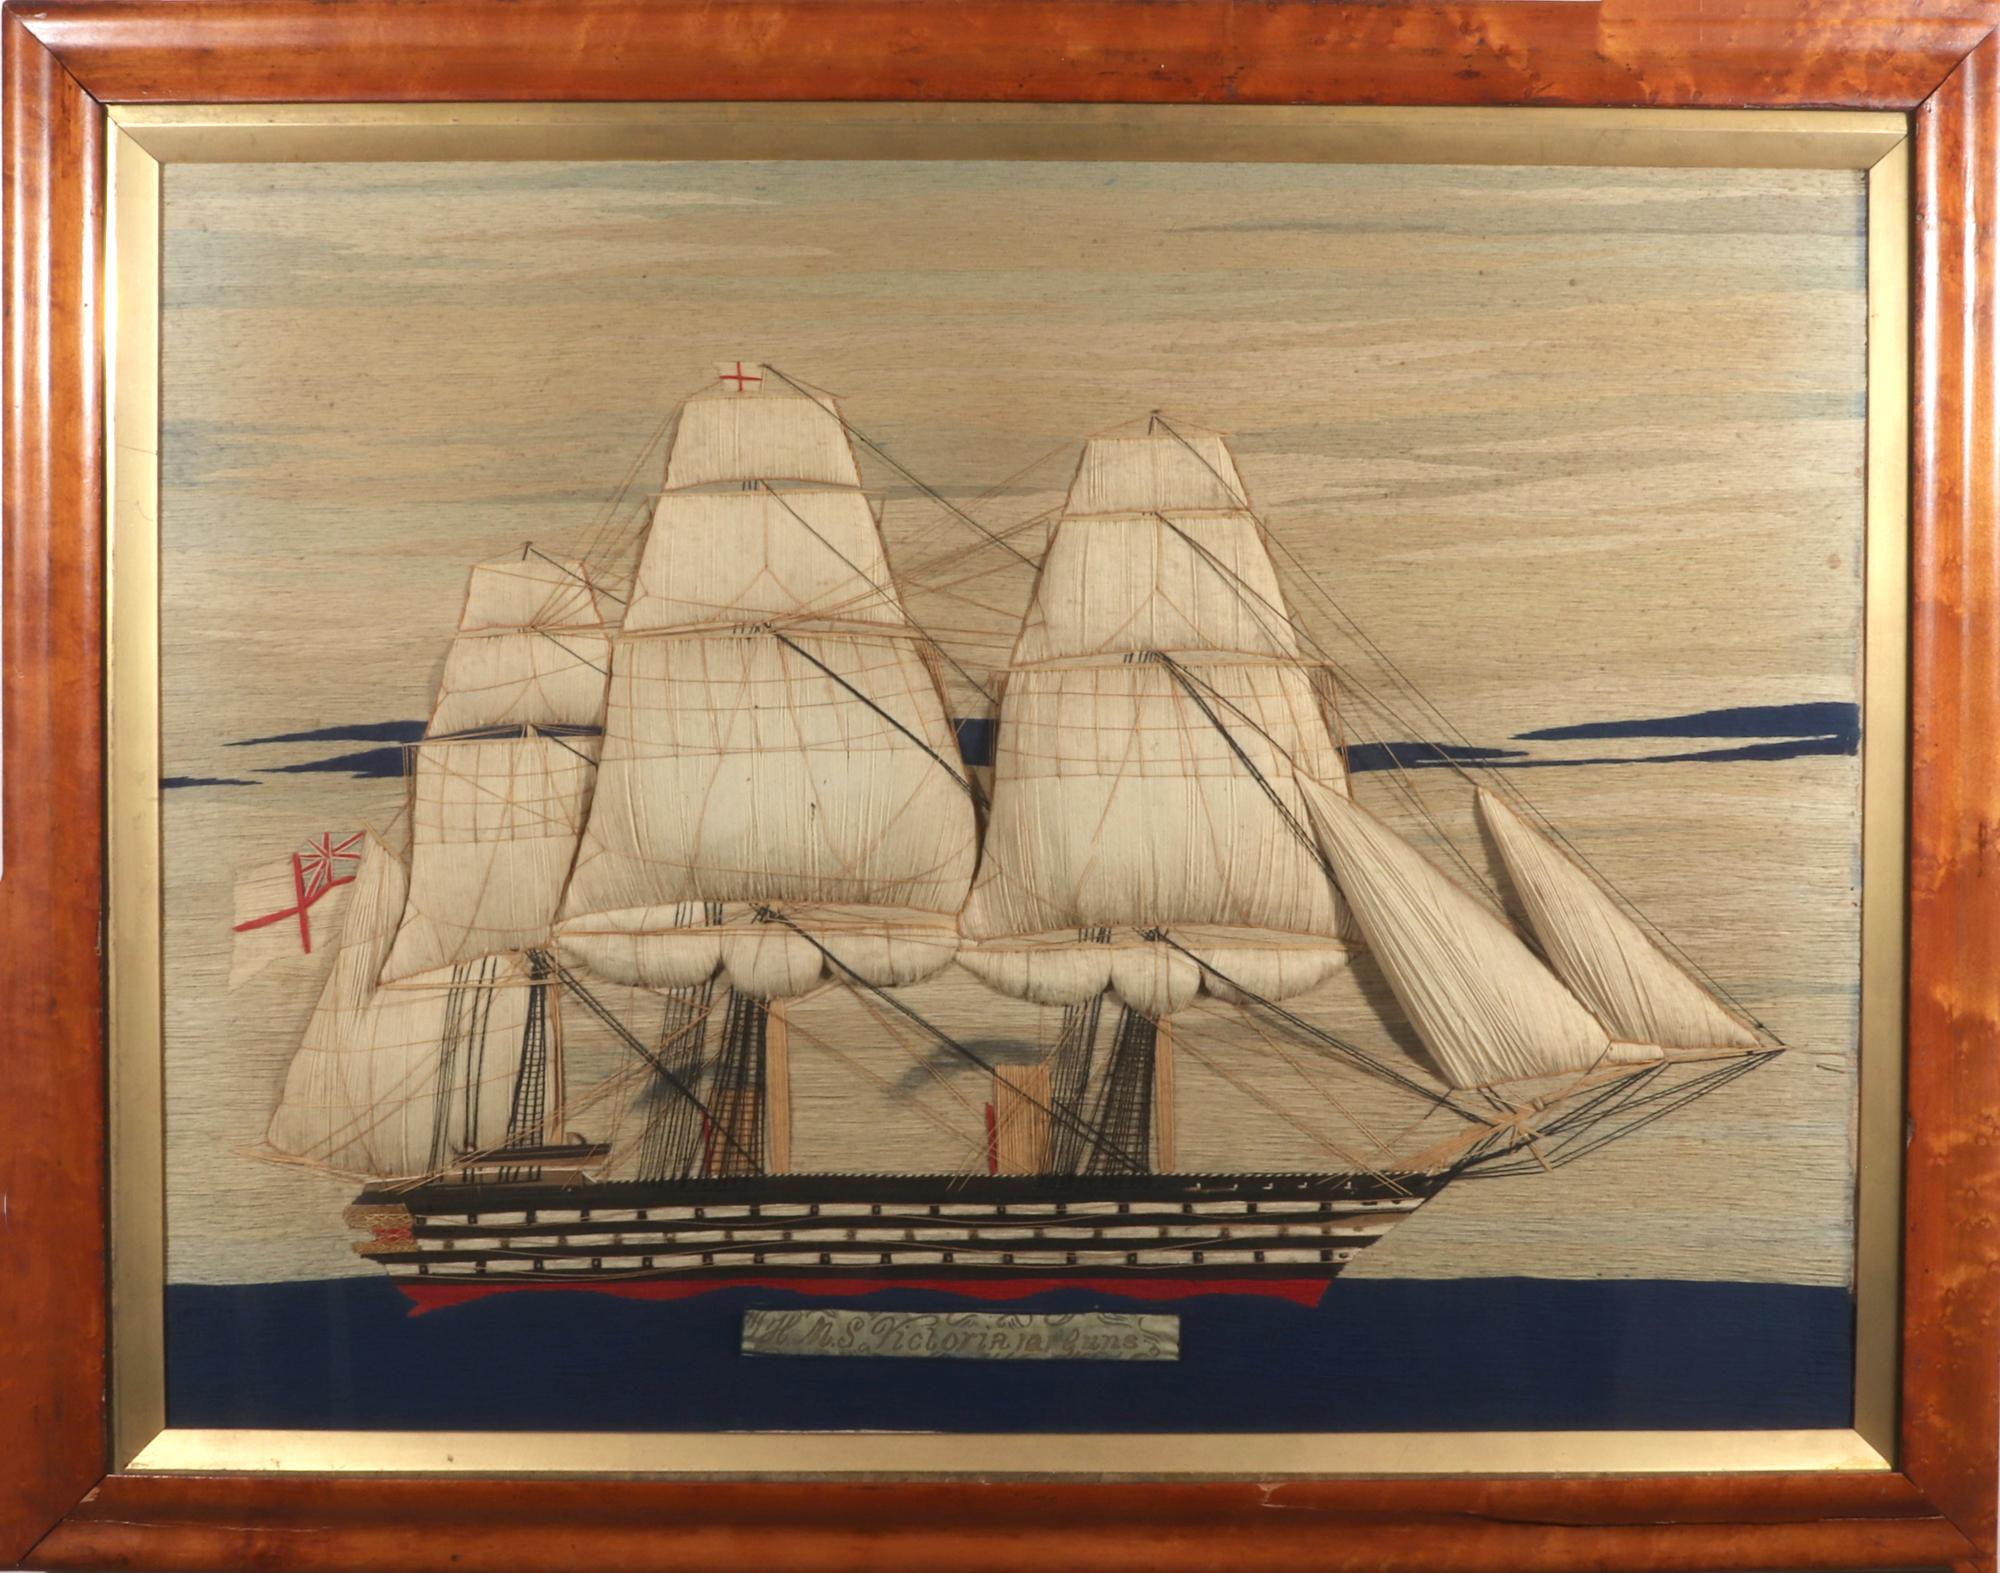 Laine de marin britannique du HMS Victoria,
Laine de Berlin sur lin (Canard),
Circa 1865

Le grand lainage de marin ou woolie représente le HMS Victoria, nommé ci-dessous sur une bannière, avec de grandes voiles Trapunto gonflées. Le HMS